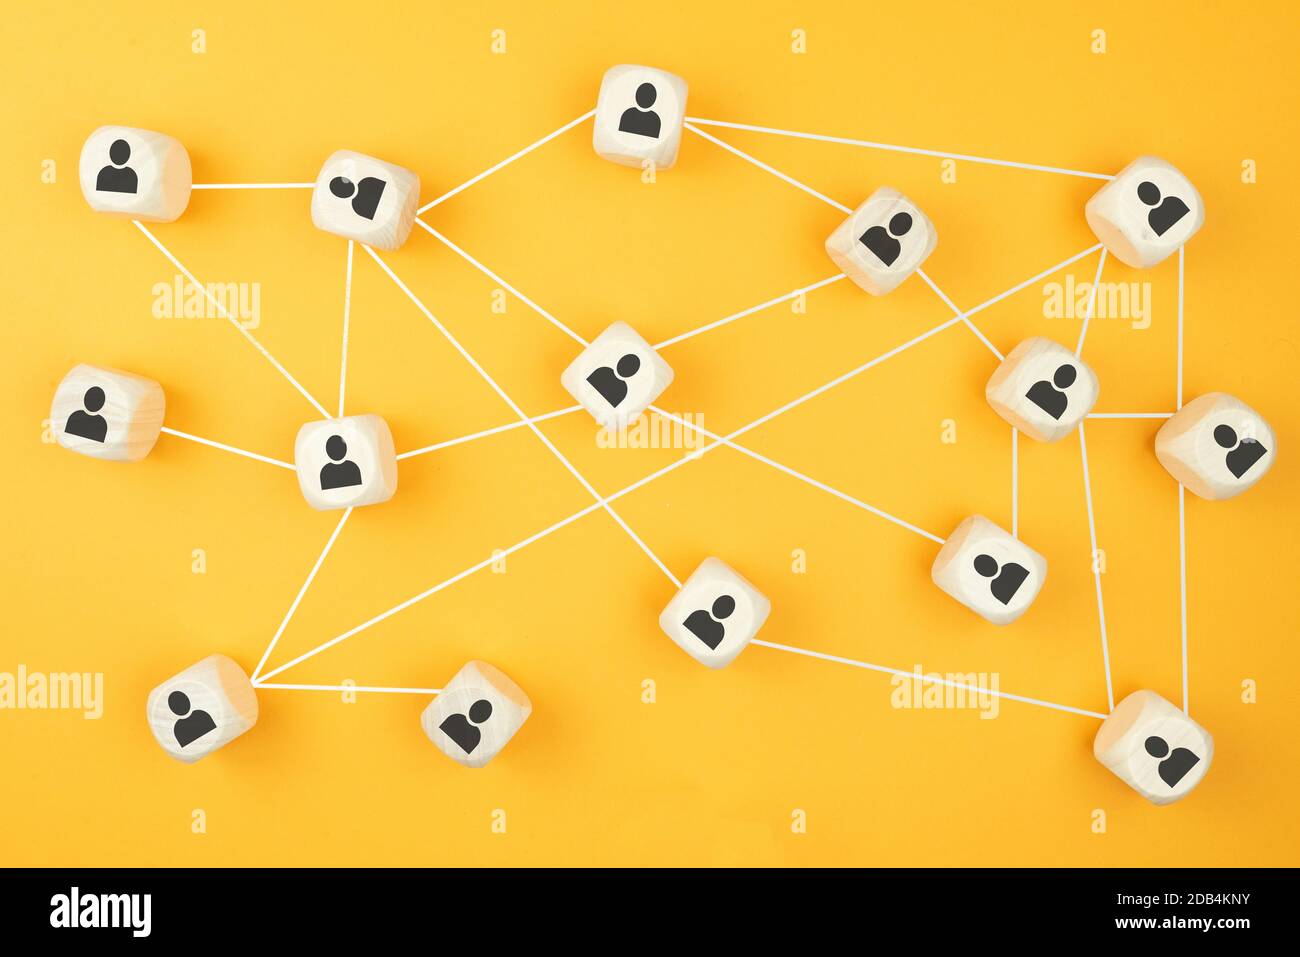 connexions entre les personnes, concept de réseau social avec des blocs de bois sur fond coloré Banque D'Images